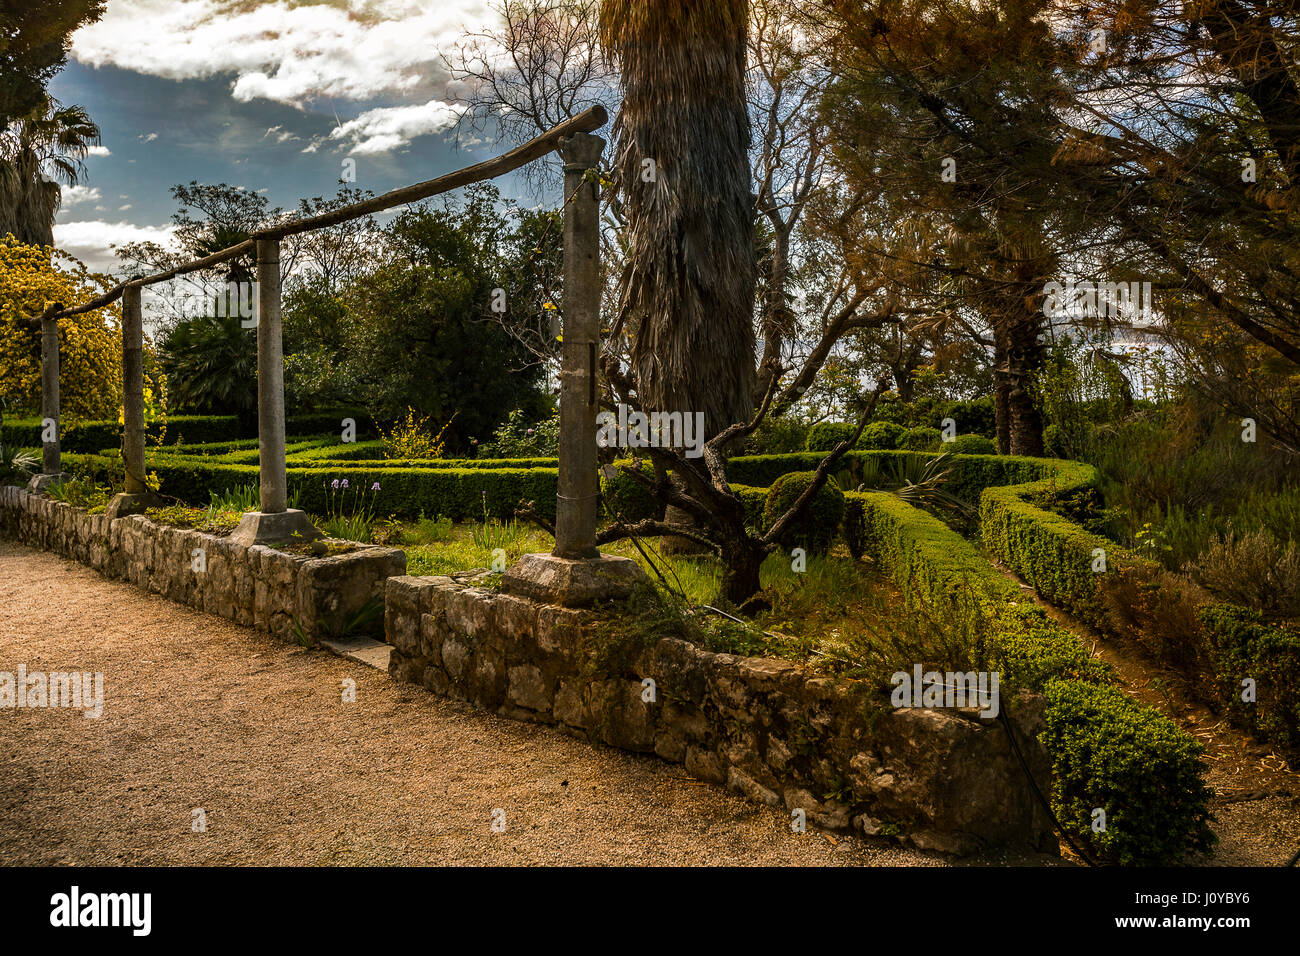 Arboretum de Trsteno Croatie Dalmatie Banque D'Images